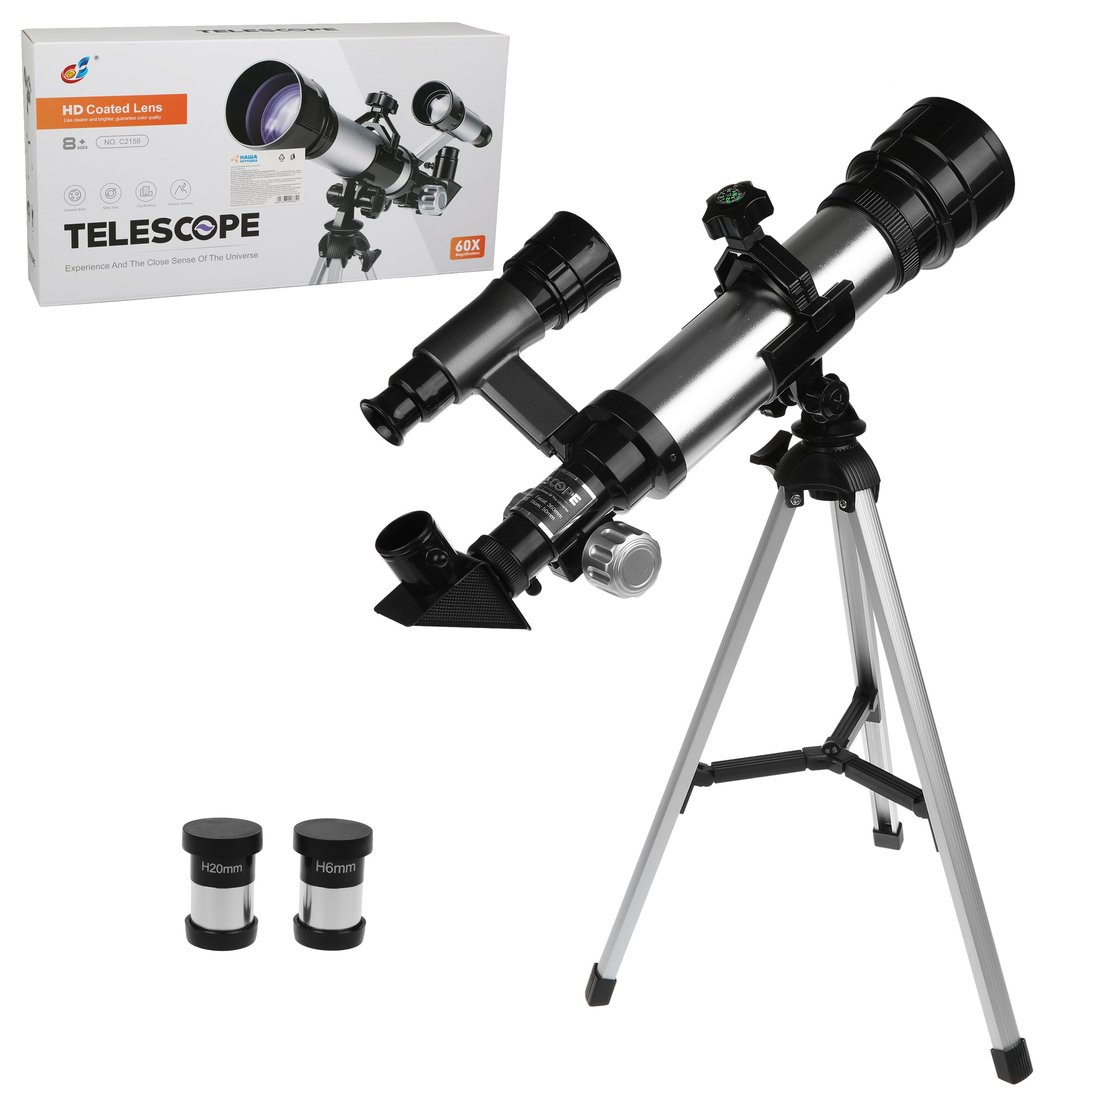 Телескоп детский Наша Игрушка 60х увеличение, 3 объектива арт. 800664 наша игрушка телескоп на ножках c2158